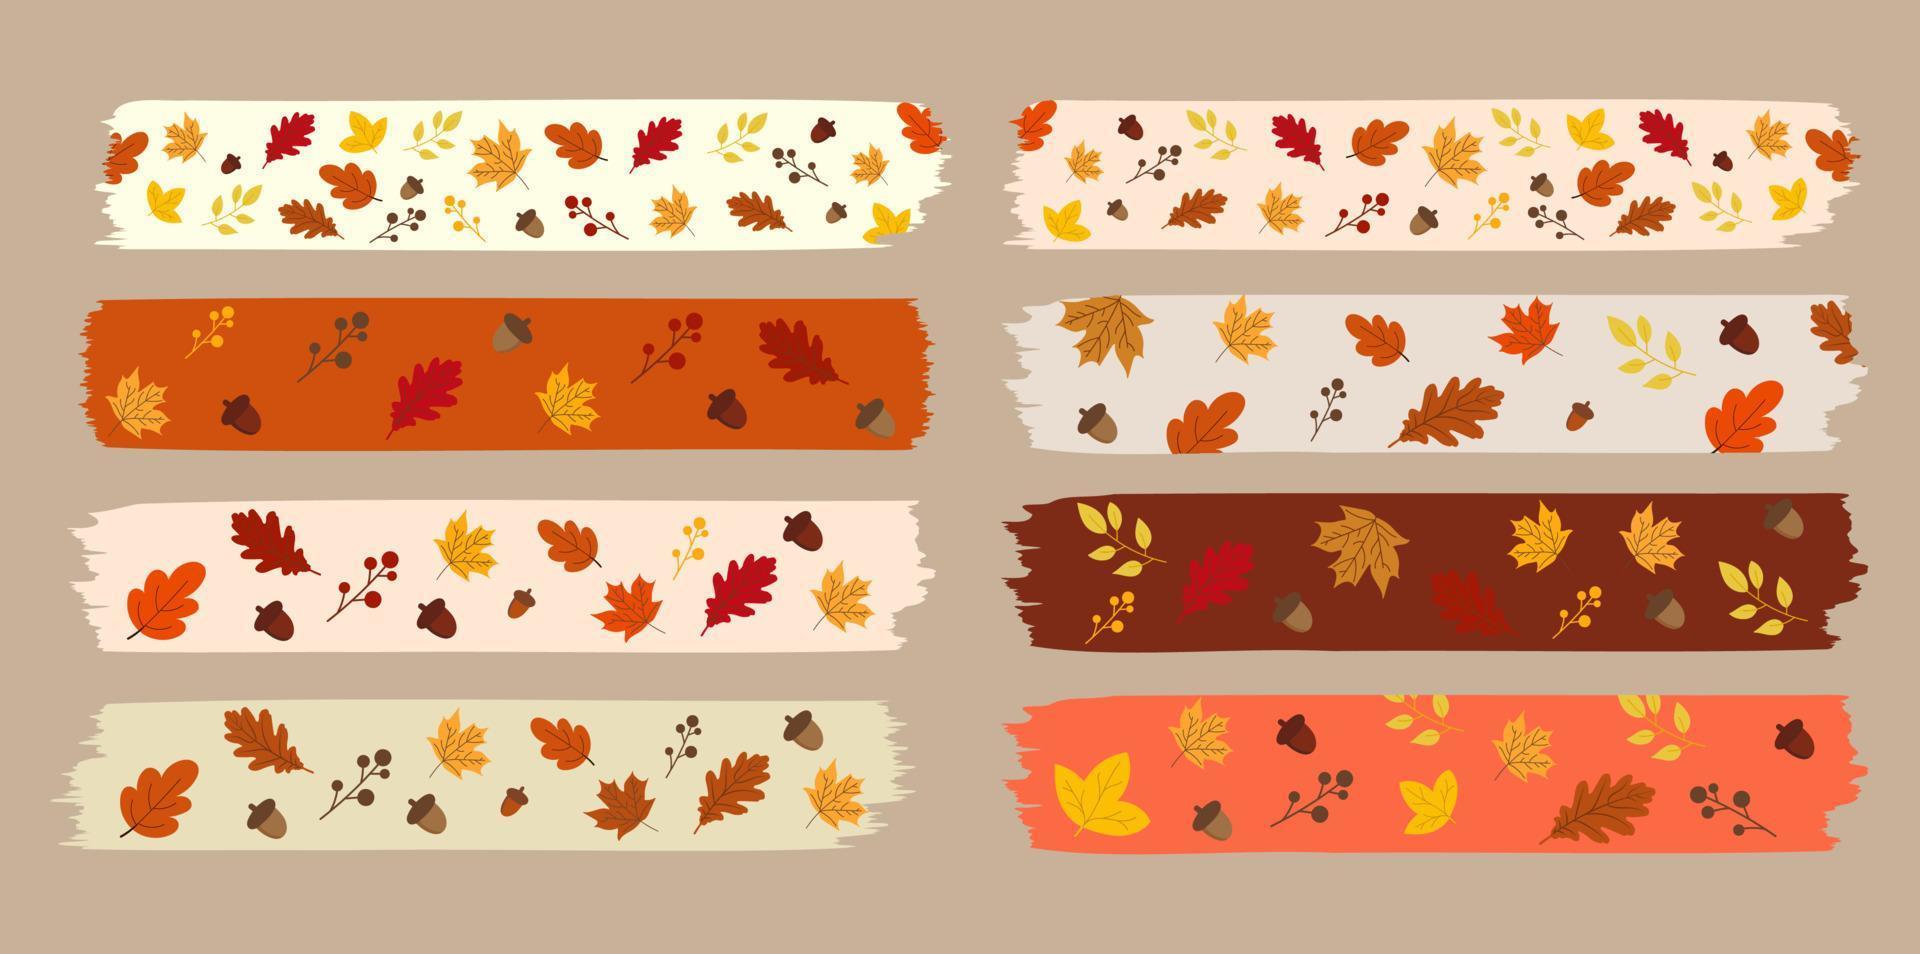 hösten höst konceptet washi tape illustration vektor